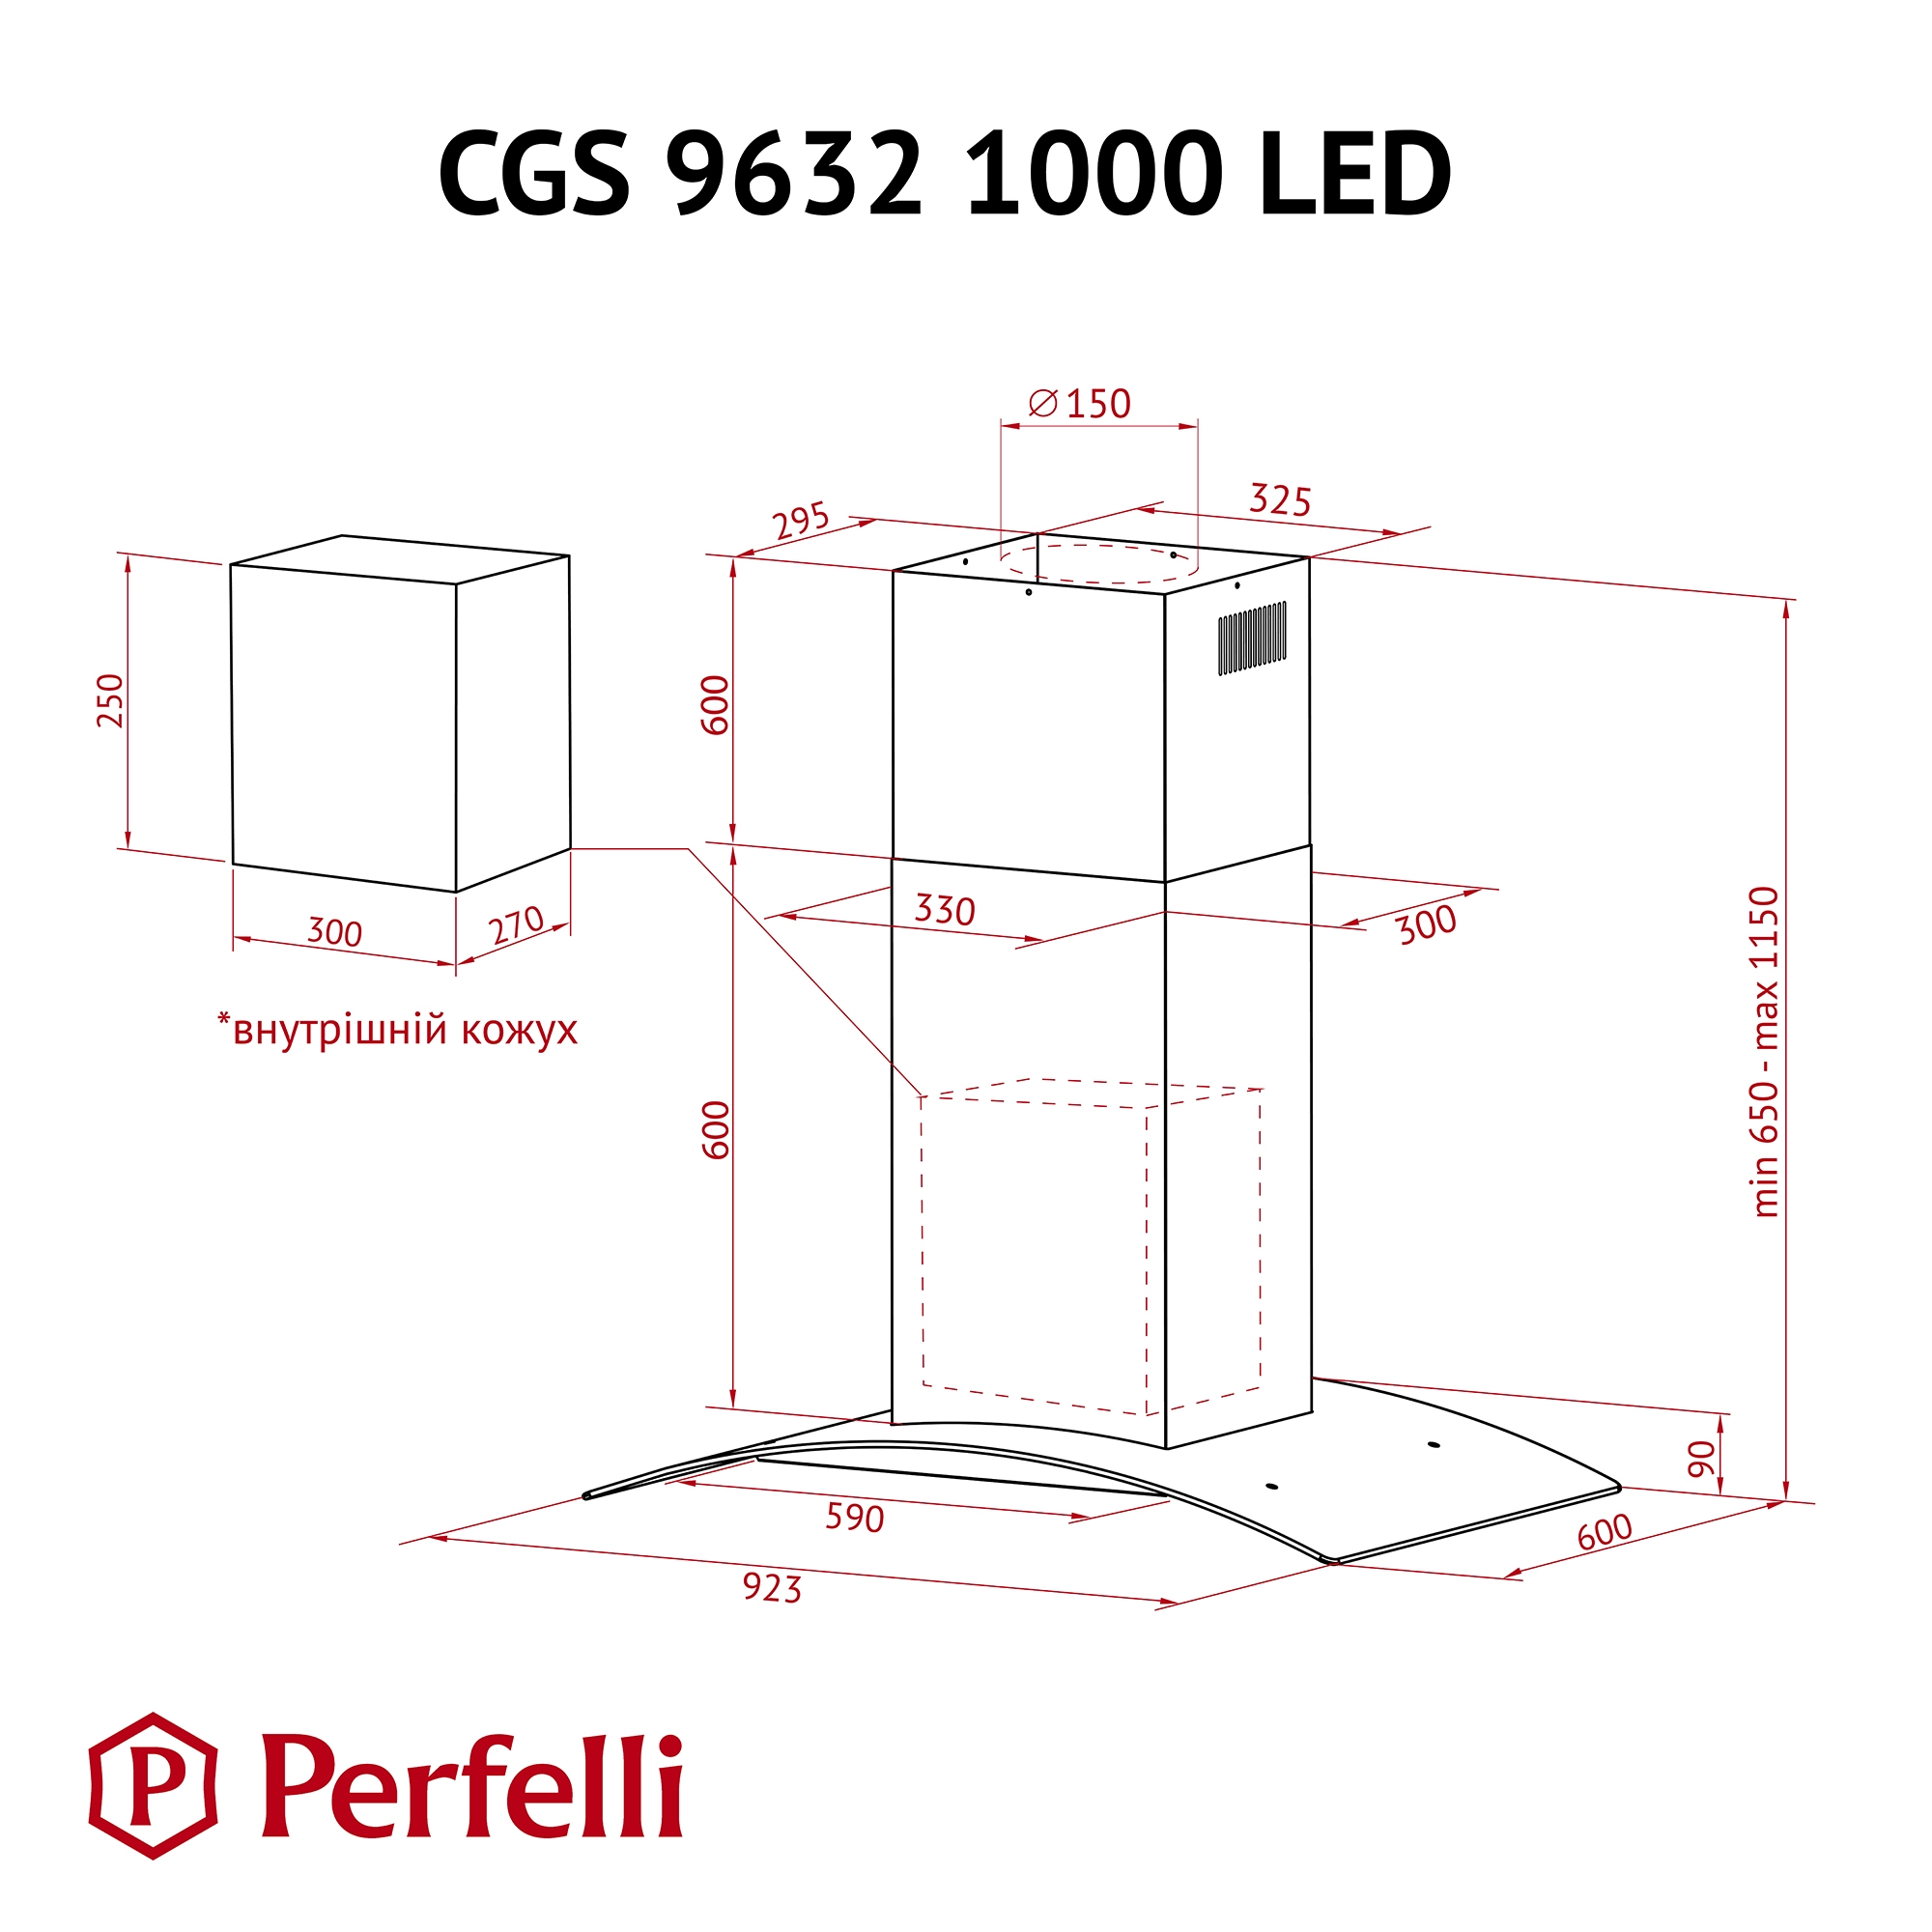 Perfelli CGS 9632 I 1000 LED Габаритные размеры